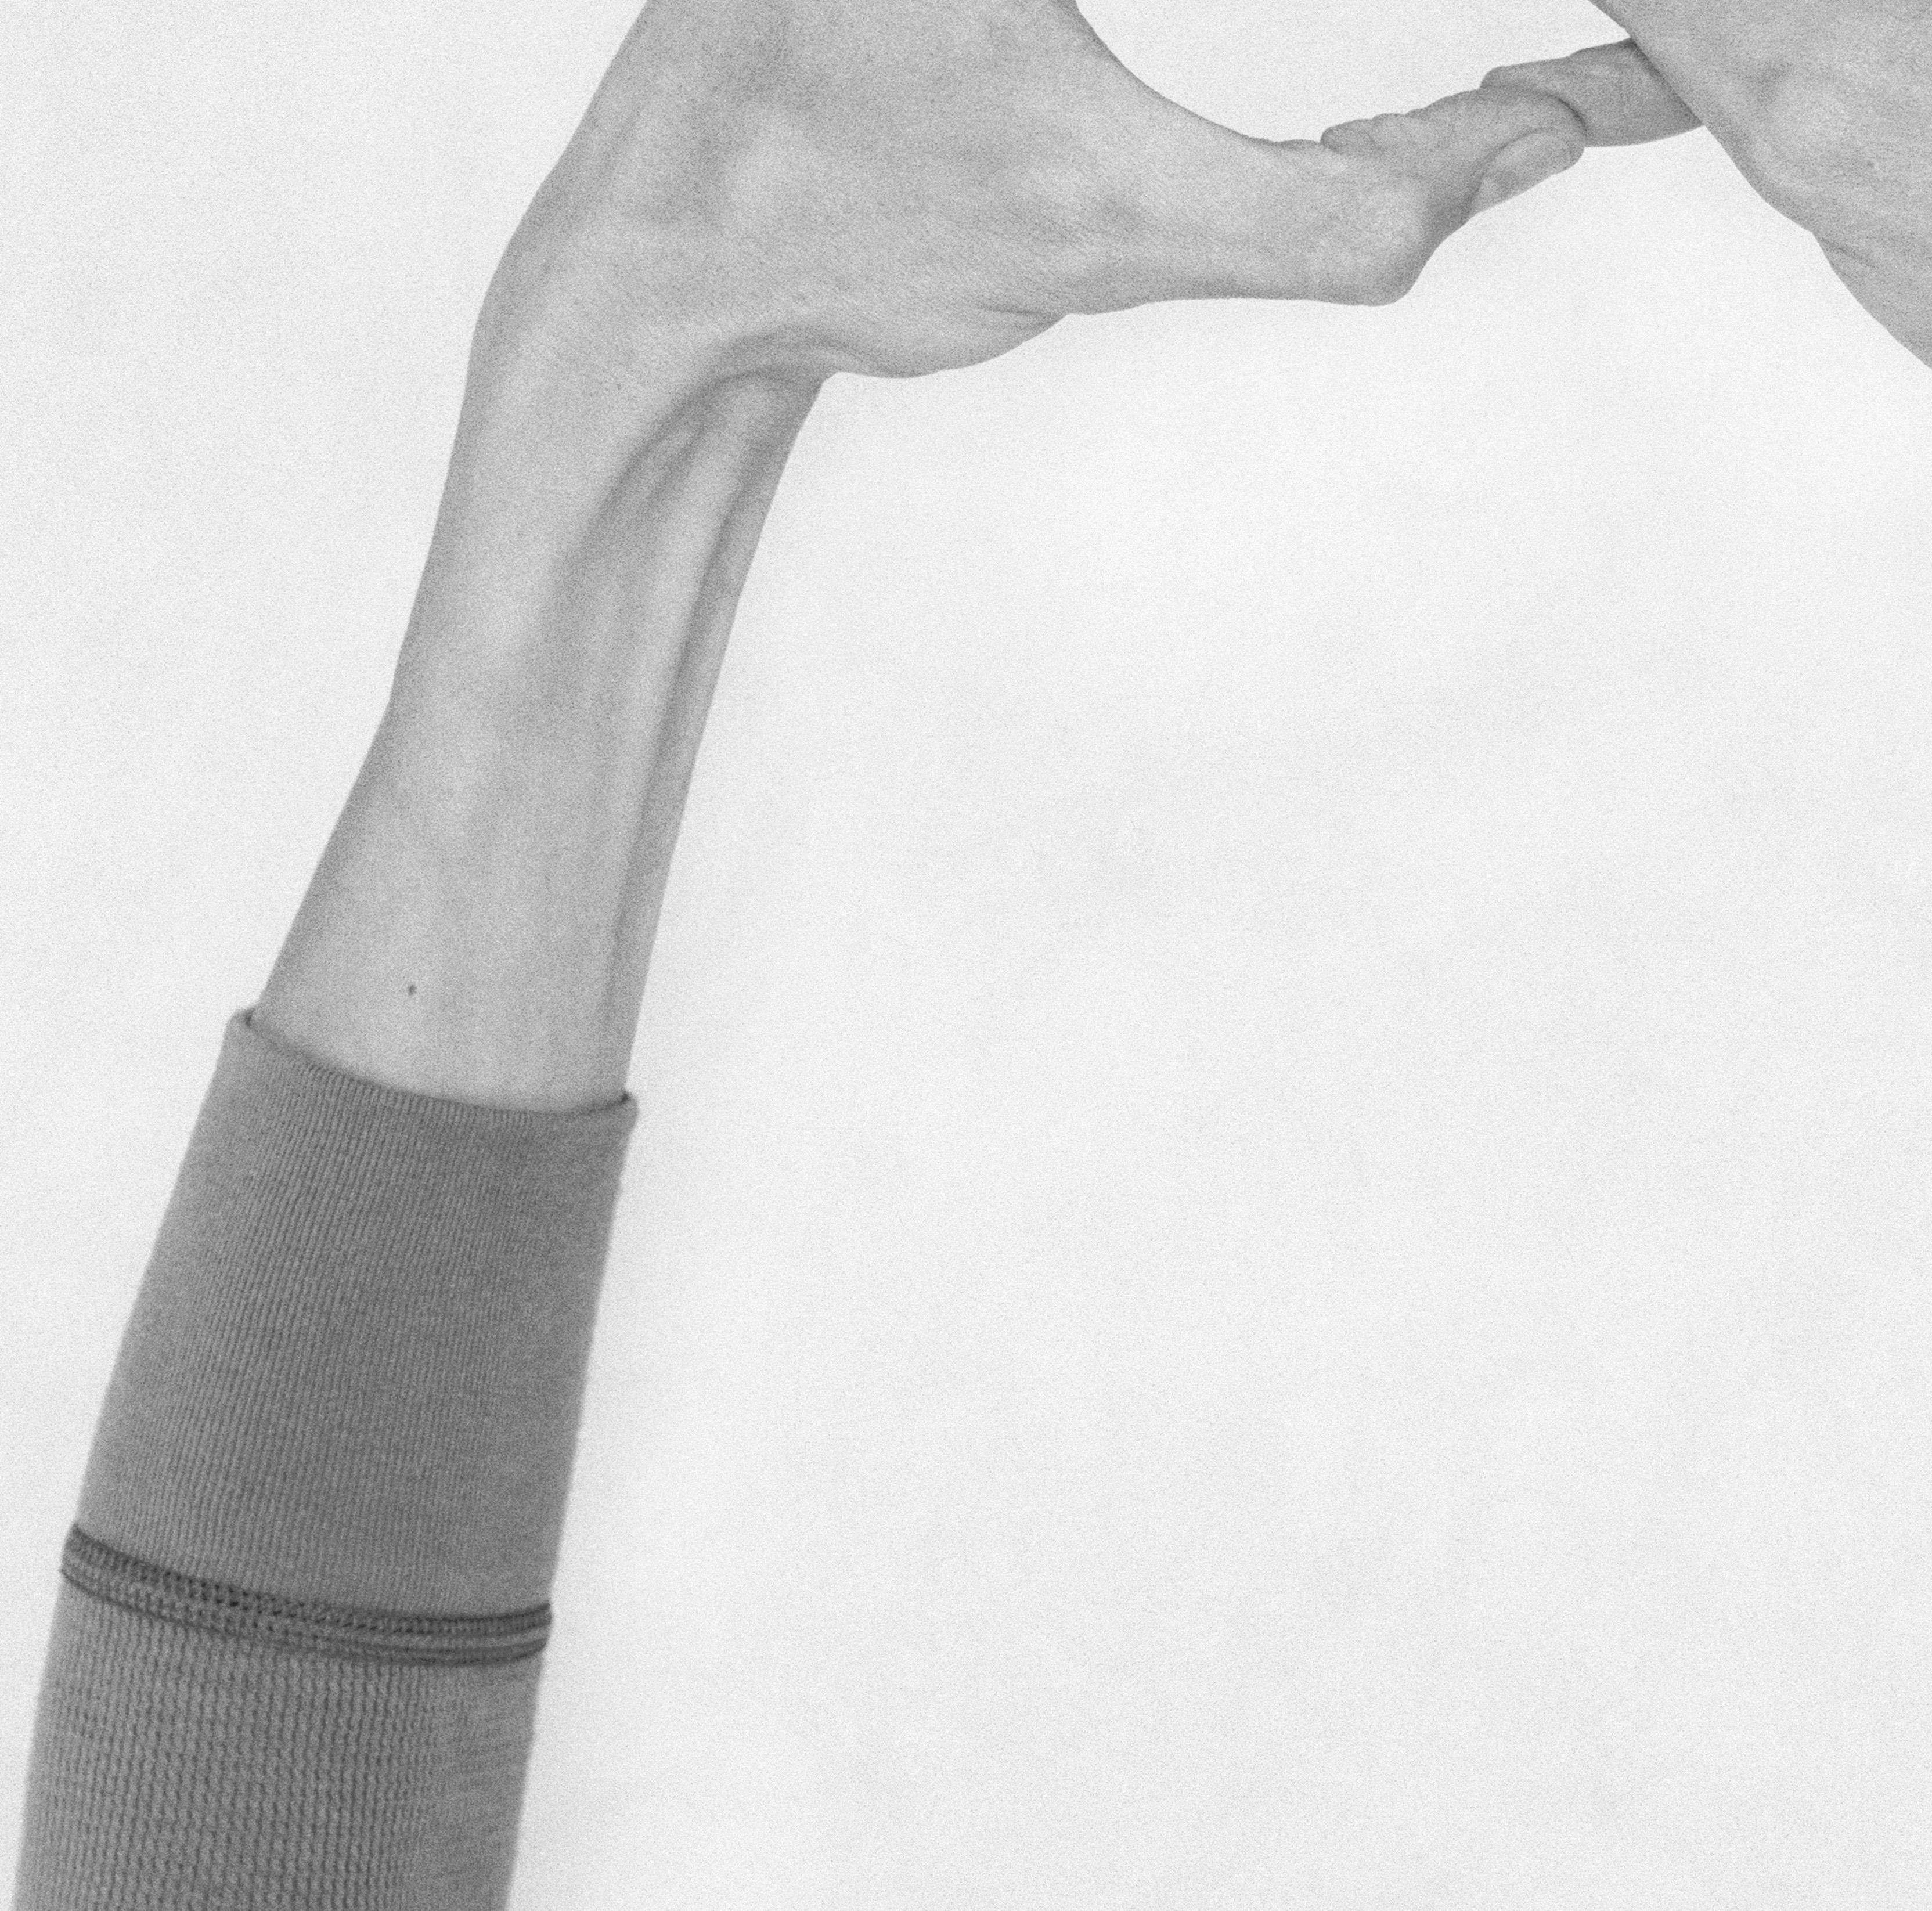 Ohne Titel XXIII. Aus der Serie Chiromorphose. Die Hände. Schwarzweiß-Fotografie – Photograph von Nico Baixas / Gos-com-fuig